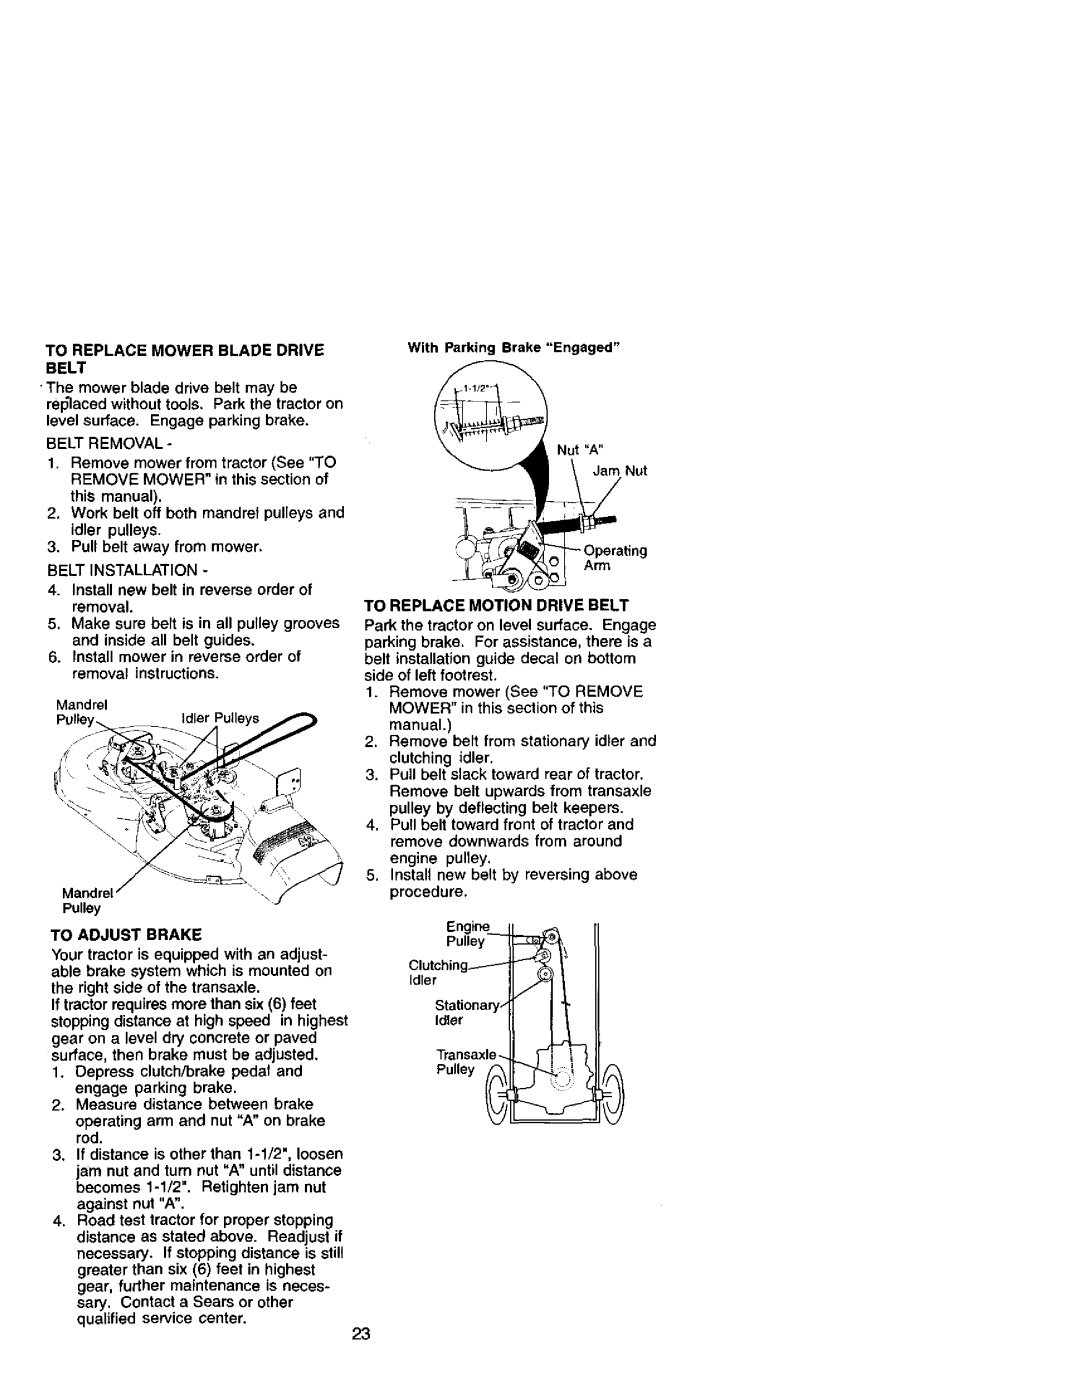 Craftsman 917.272051 owner manual To Replace Mower Blade Drive Belt, Belt Removal, Belt Installation, To Adjust Brake 